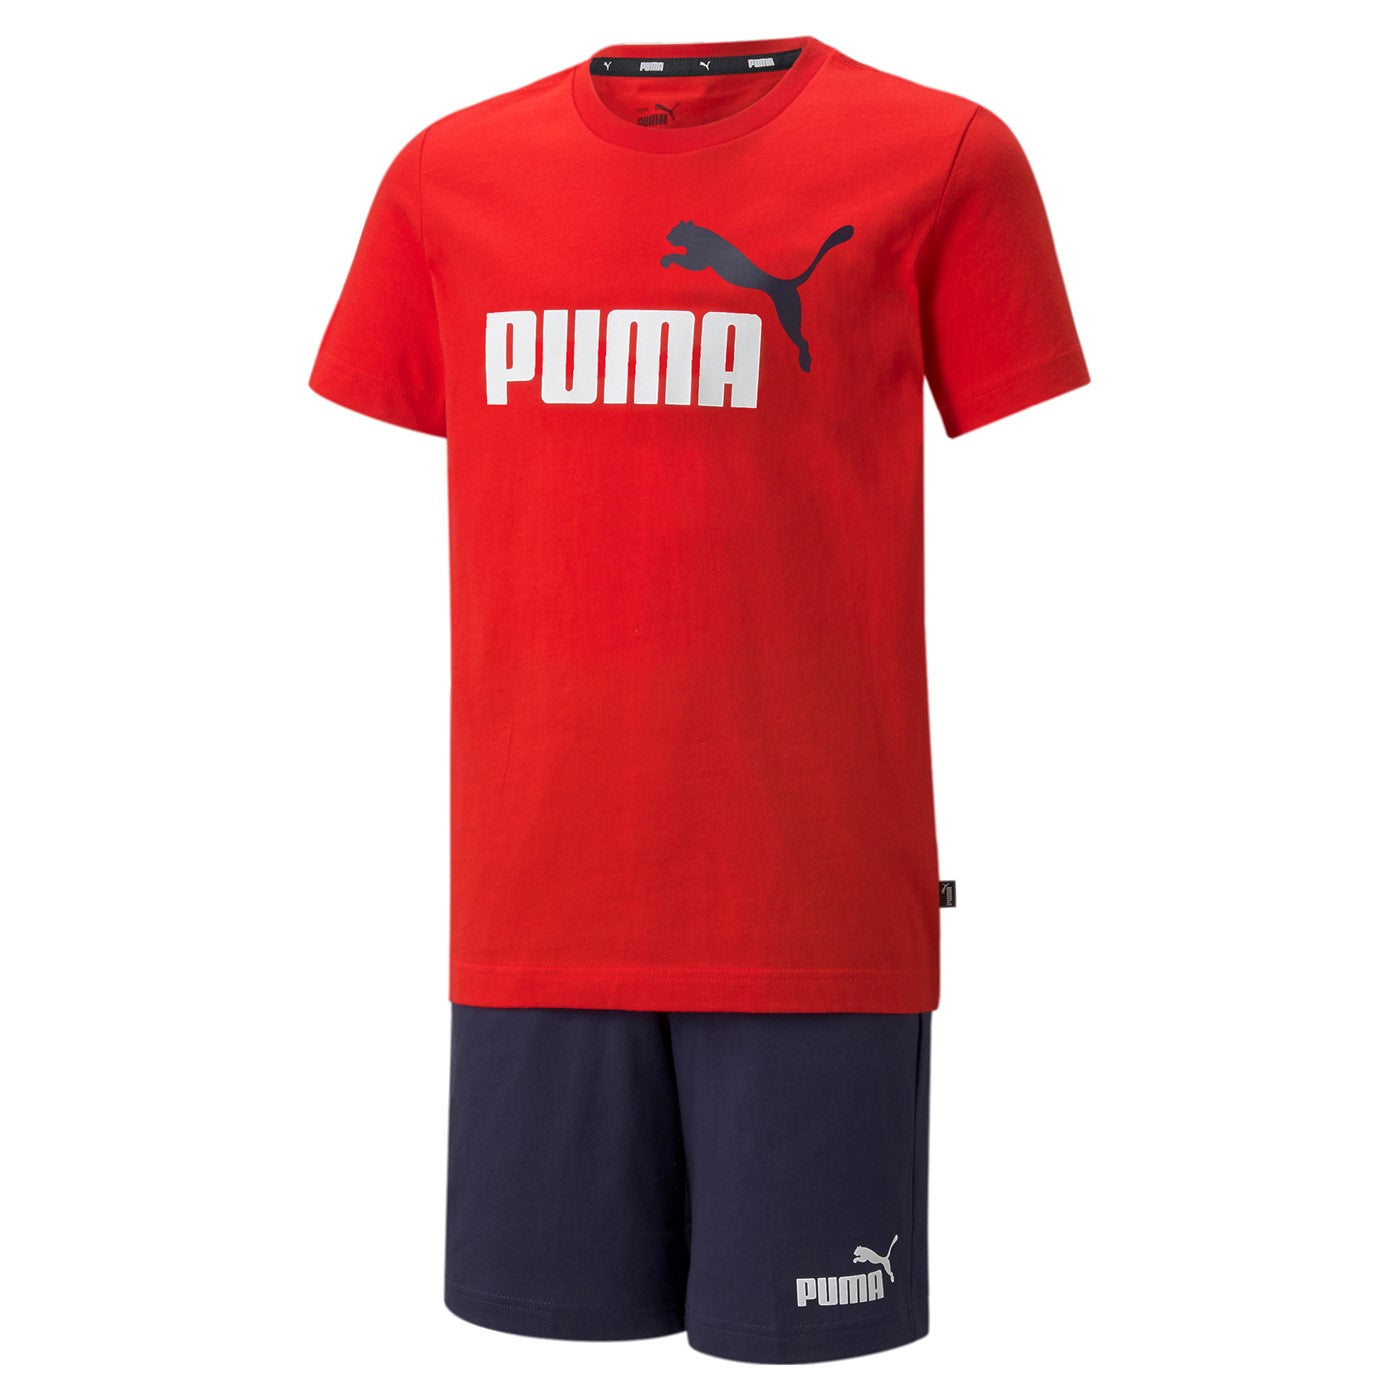 Puma Short Jersey Set B 847310-11 high risk red